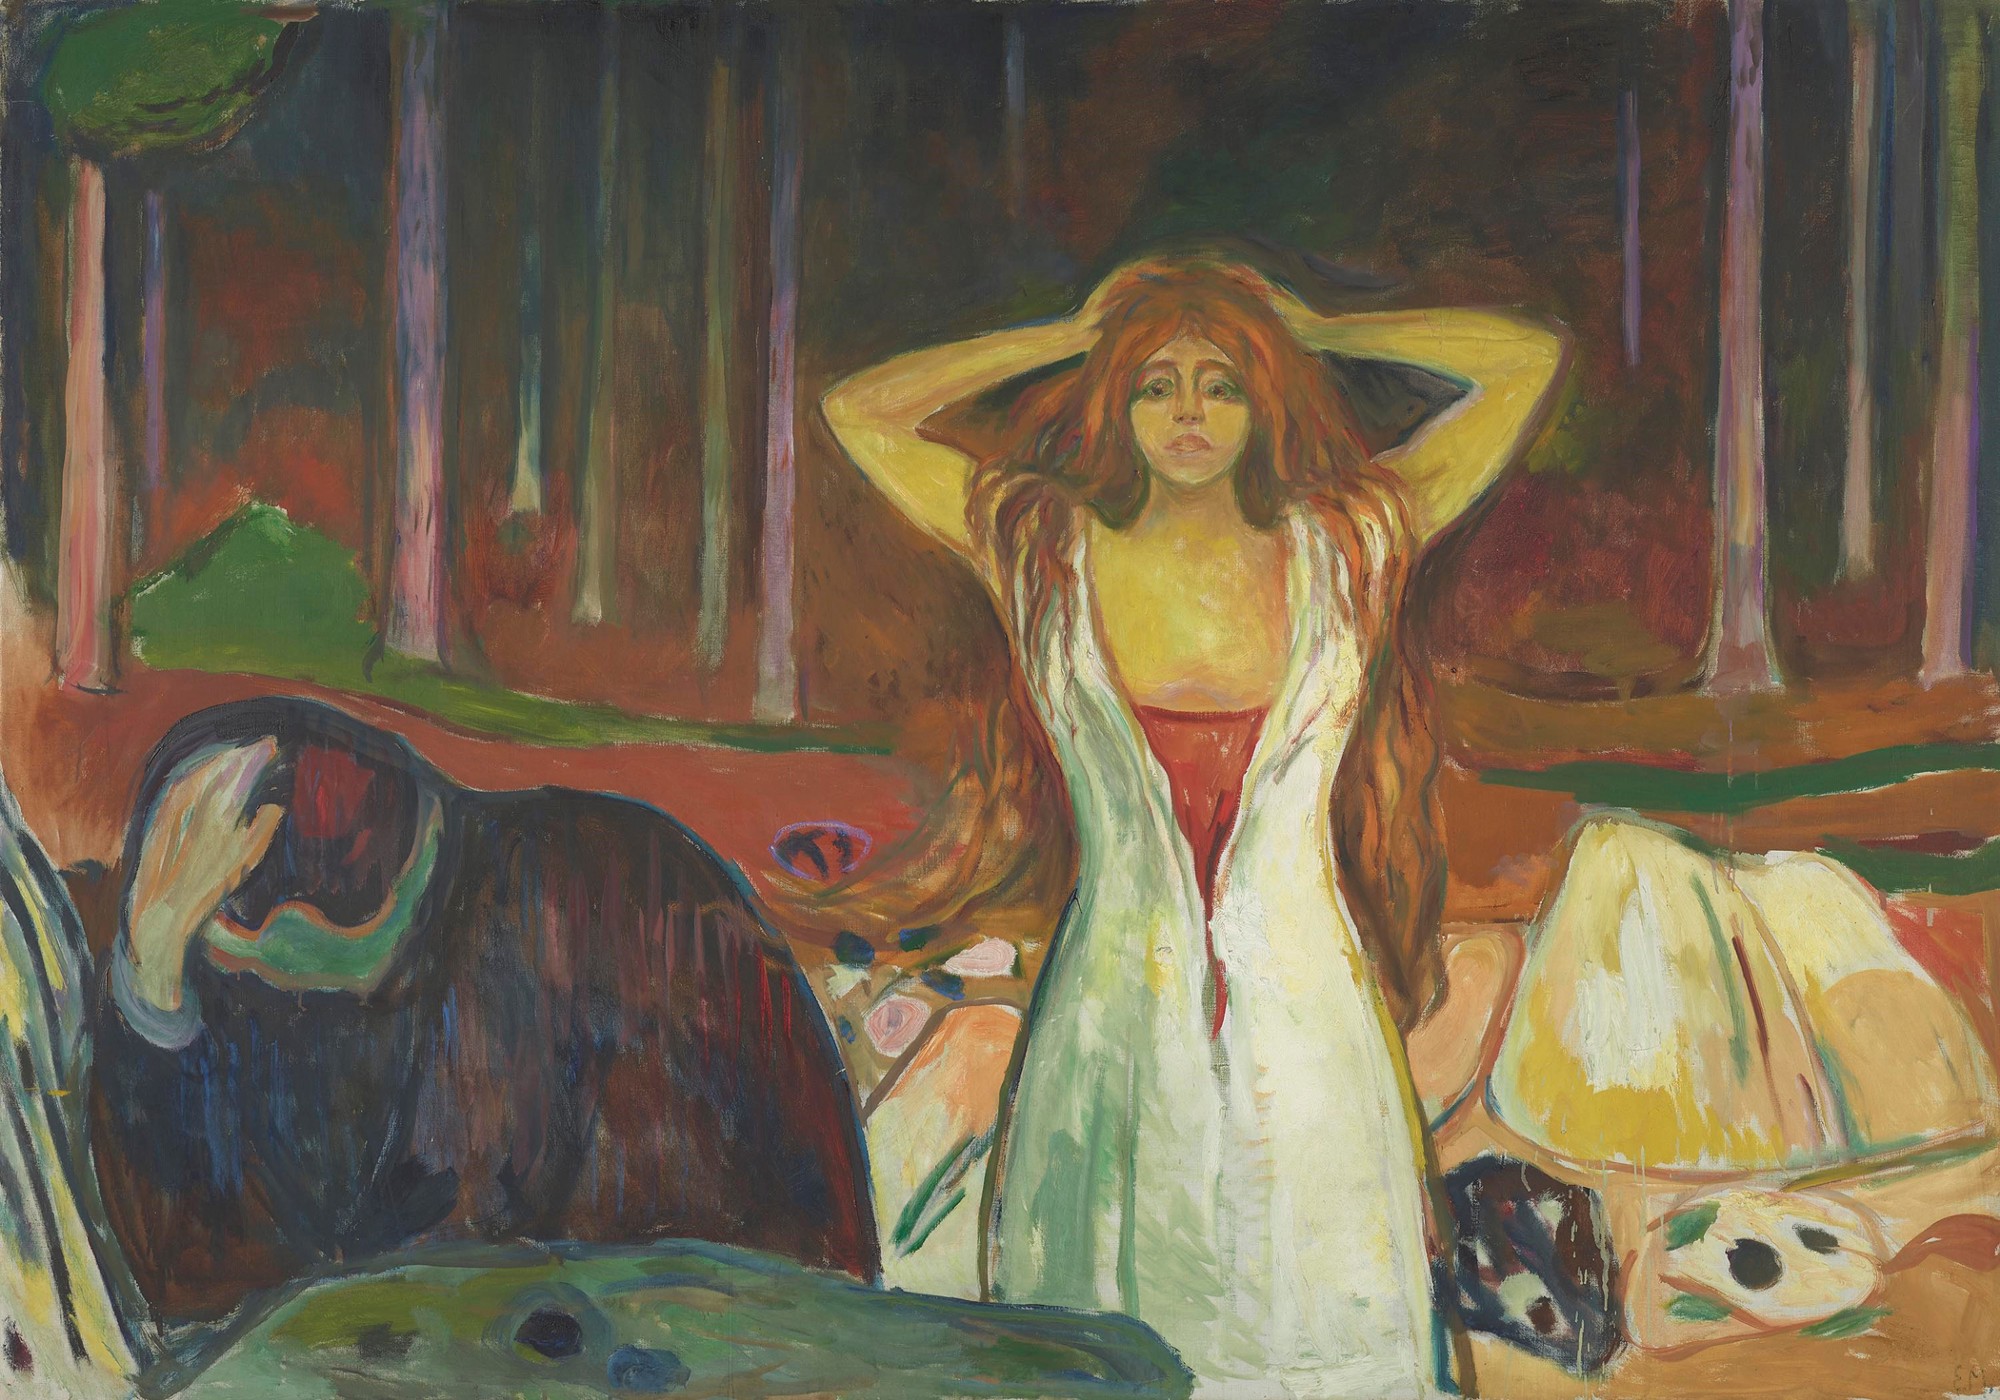 Cenușă by Edvard Munch - 1894 - 200 x 140 cm 